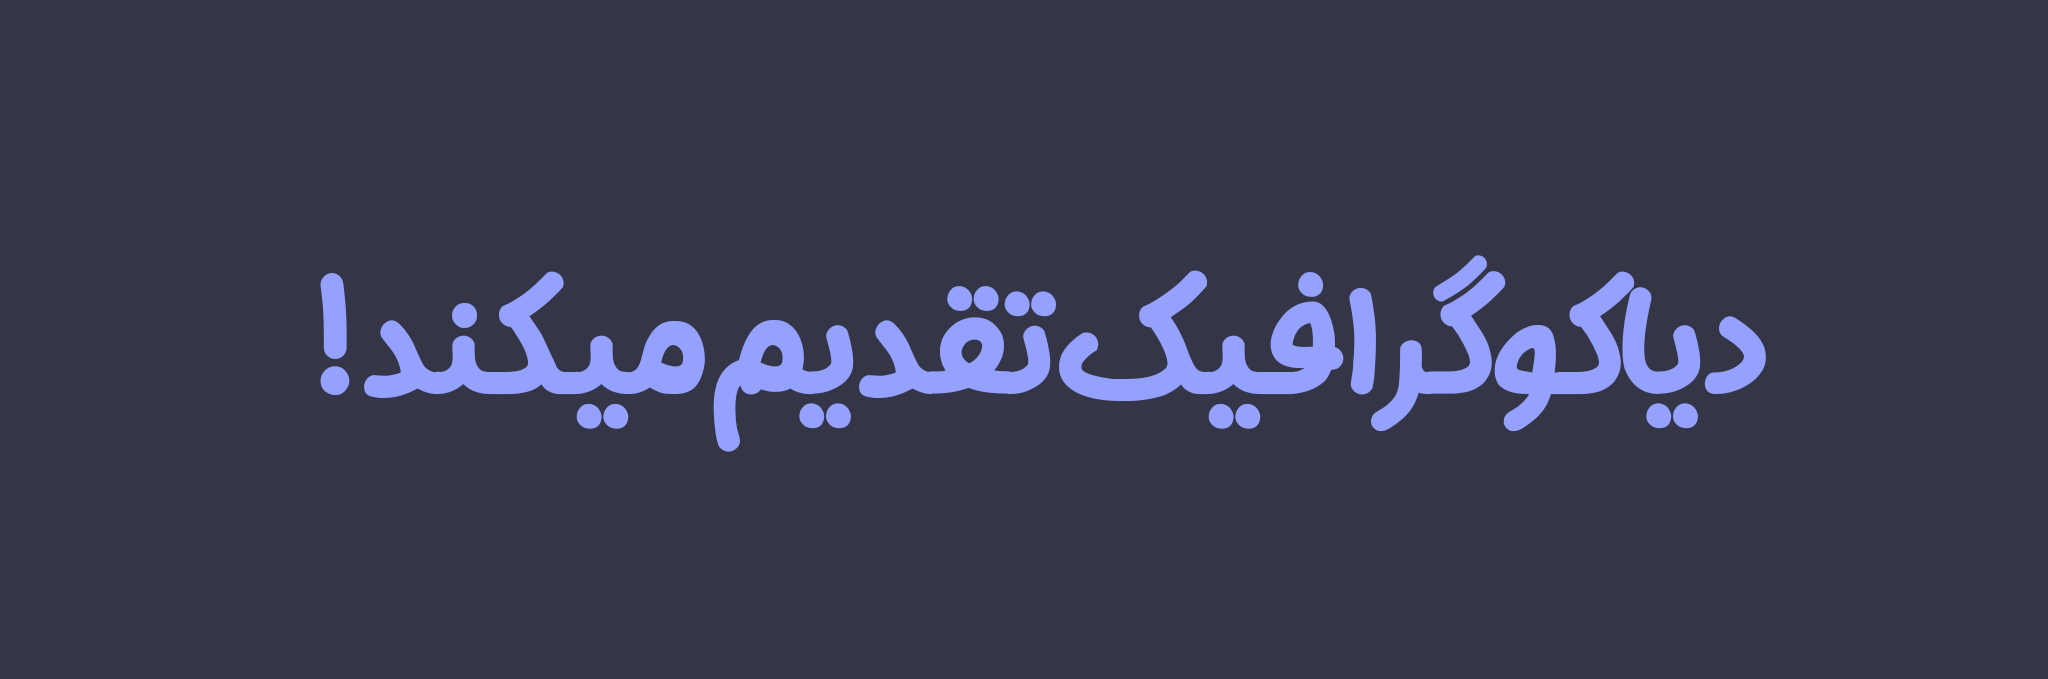 دانلود فونت فارسی جدید پاستیل Pastil Font با فرمت TTF